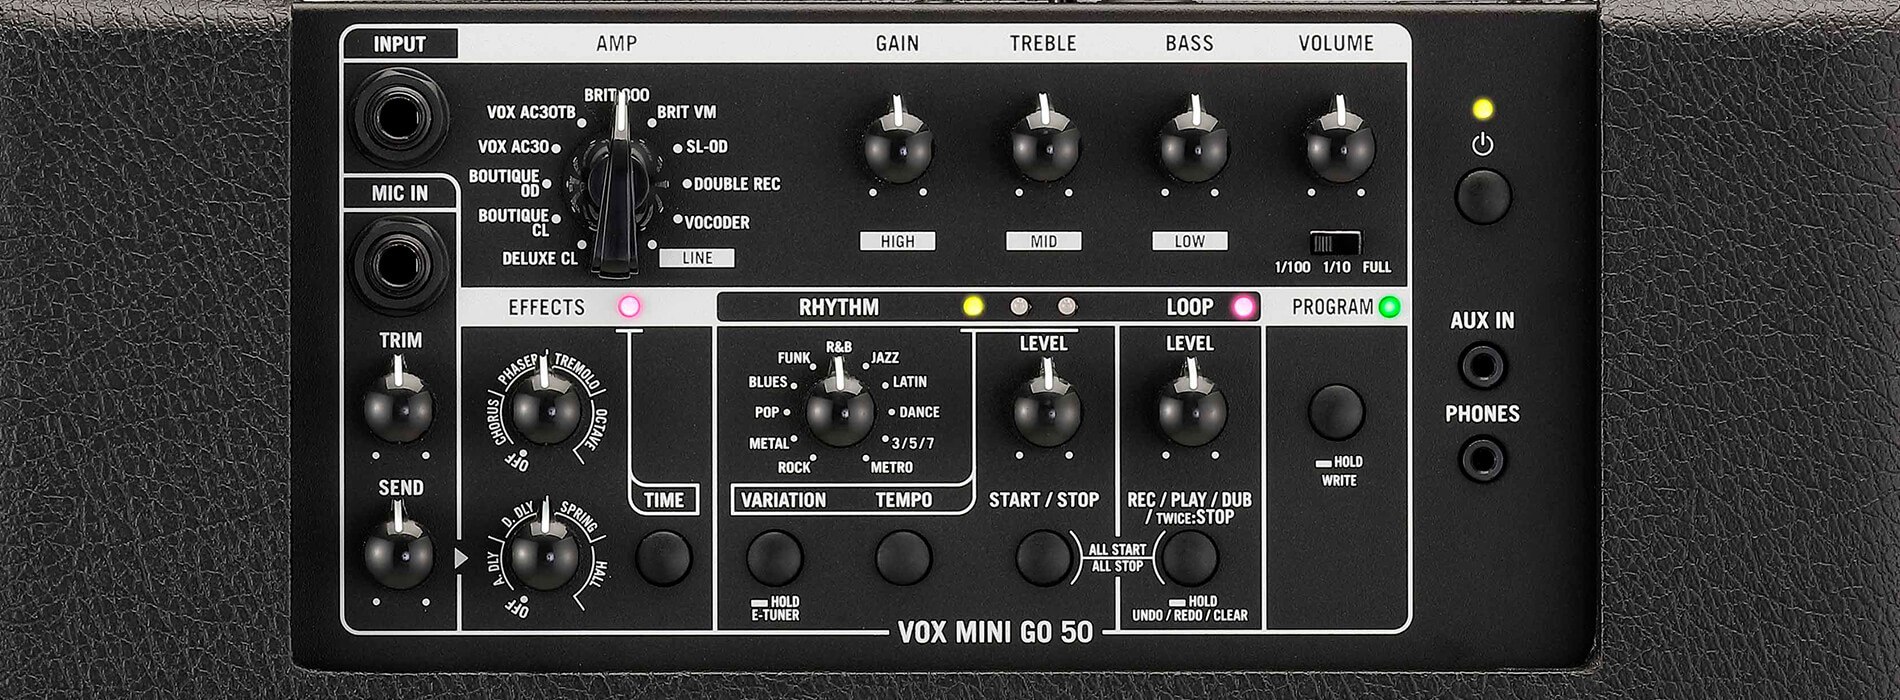 top control panel of Vox Mini Go50 guitar amp